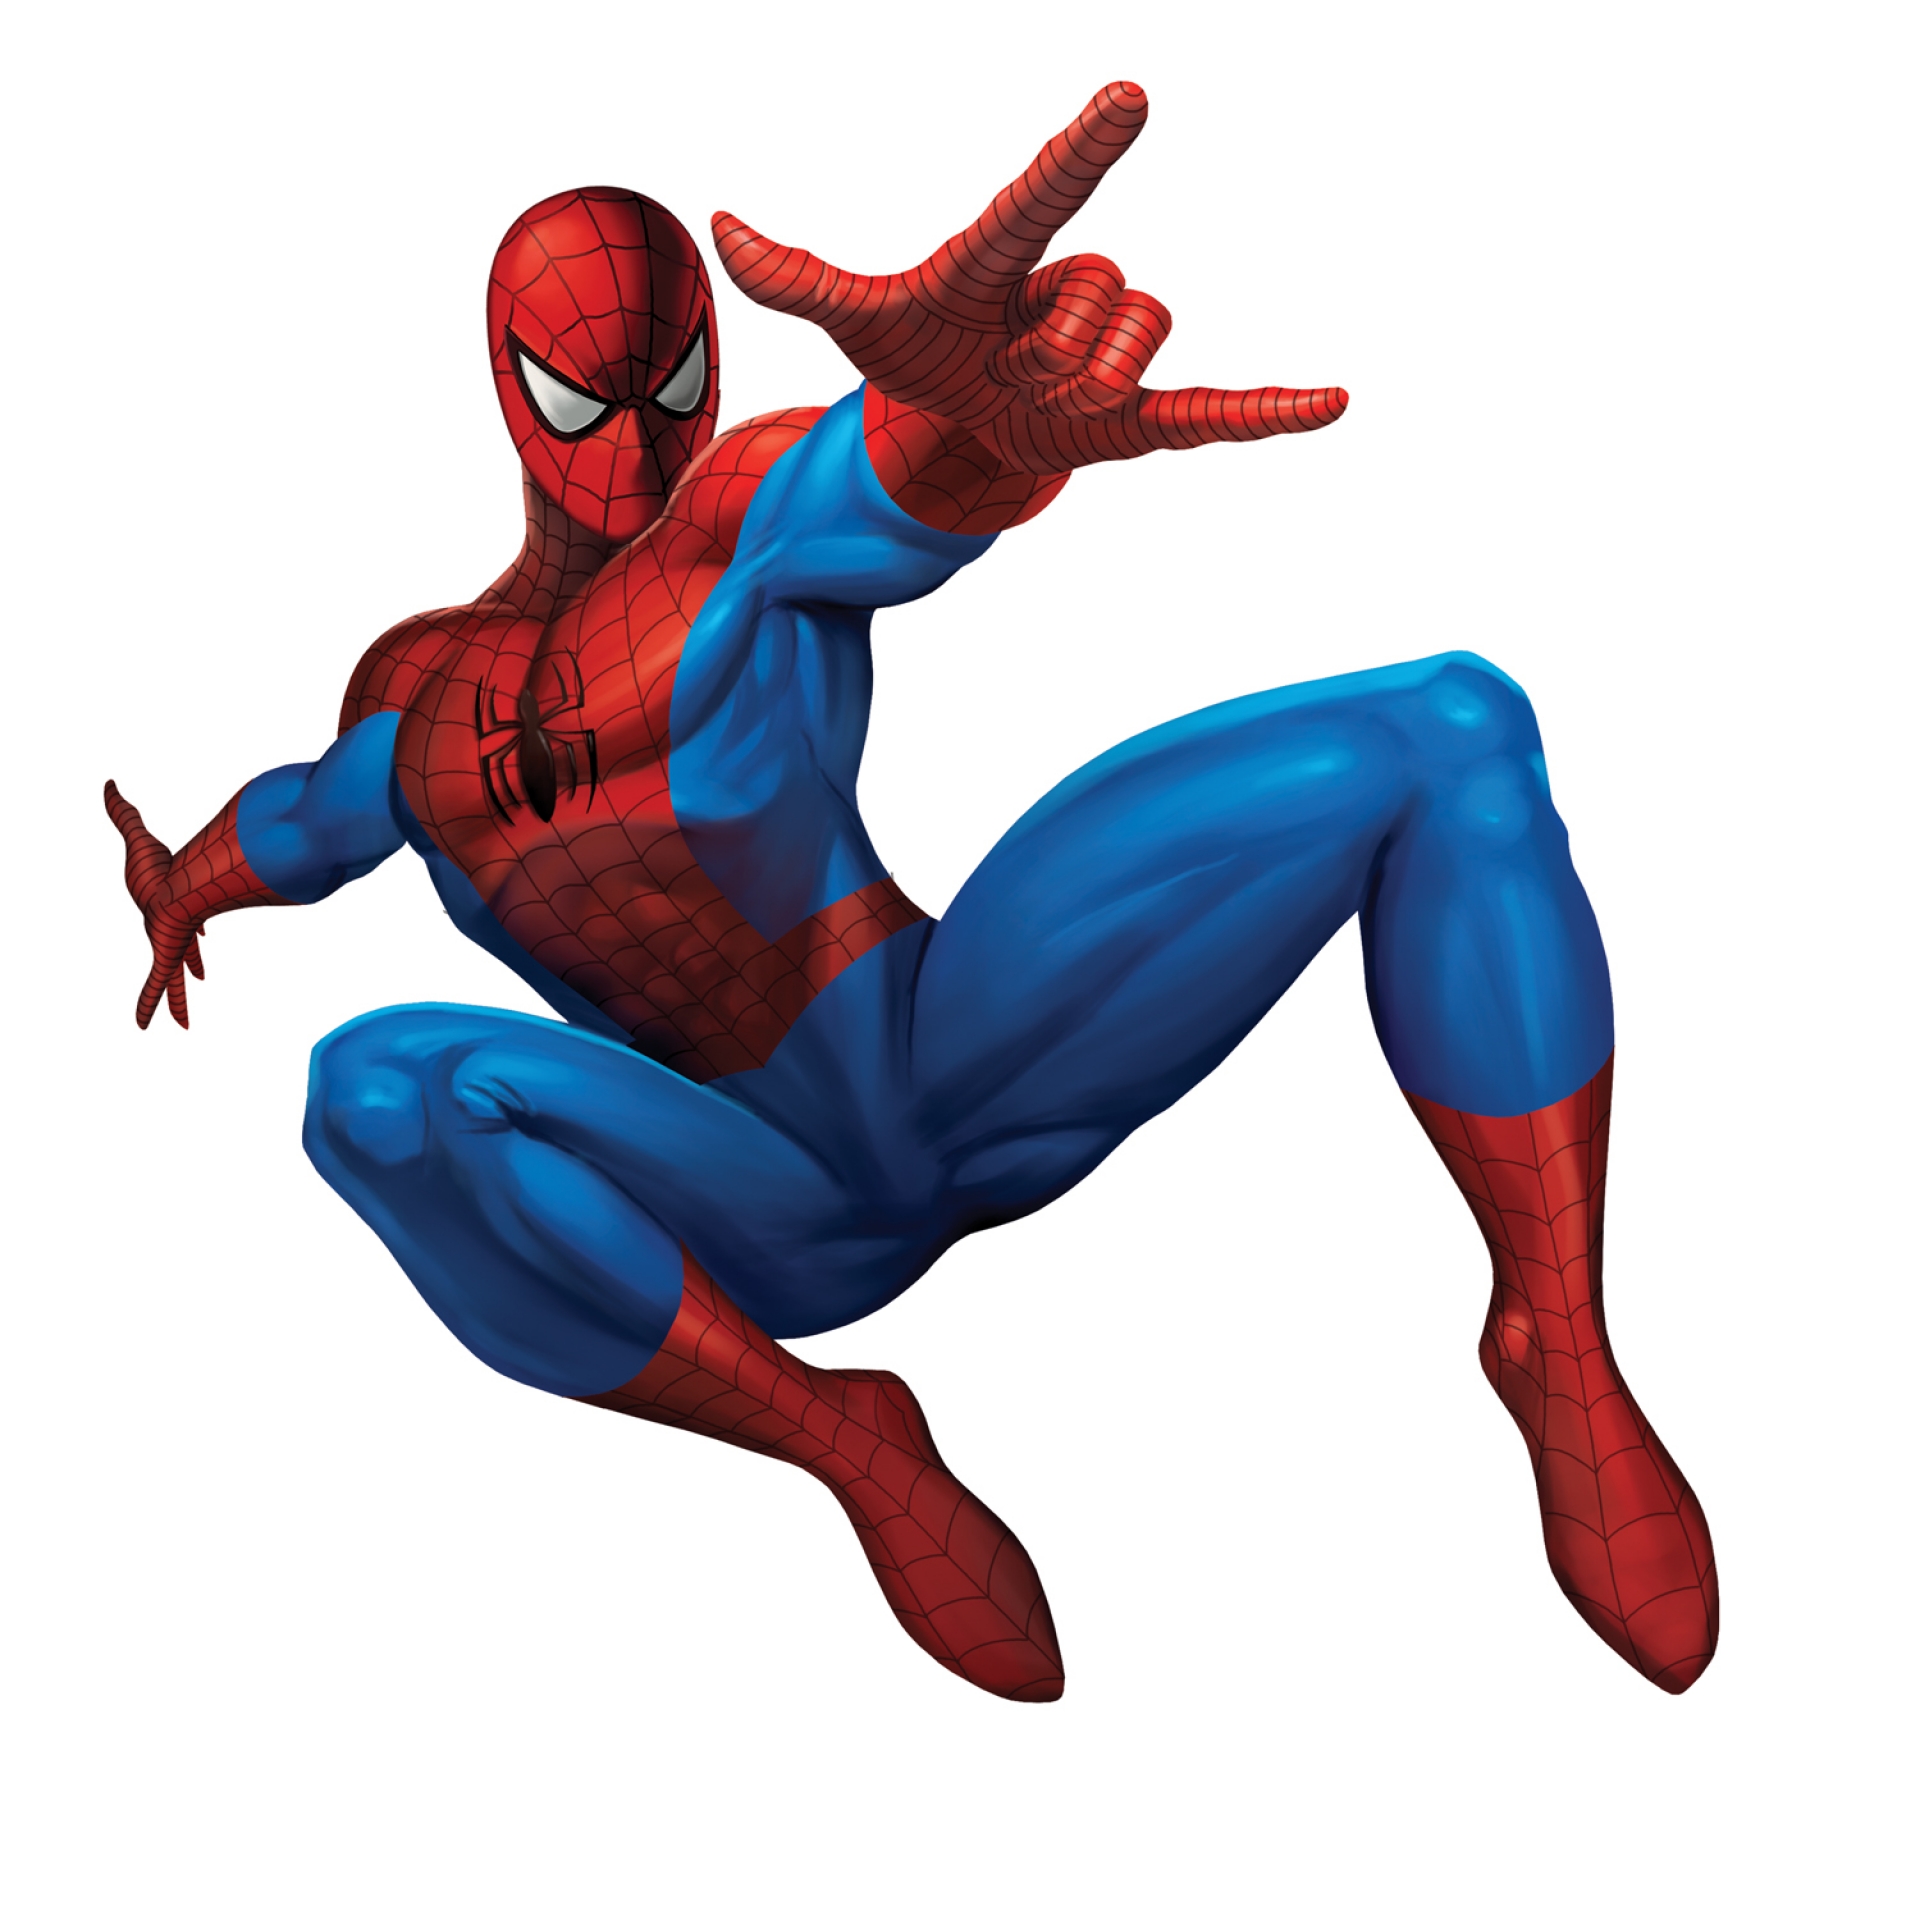 Get Download Spiderman Cartoon Picture | imagebasket.net